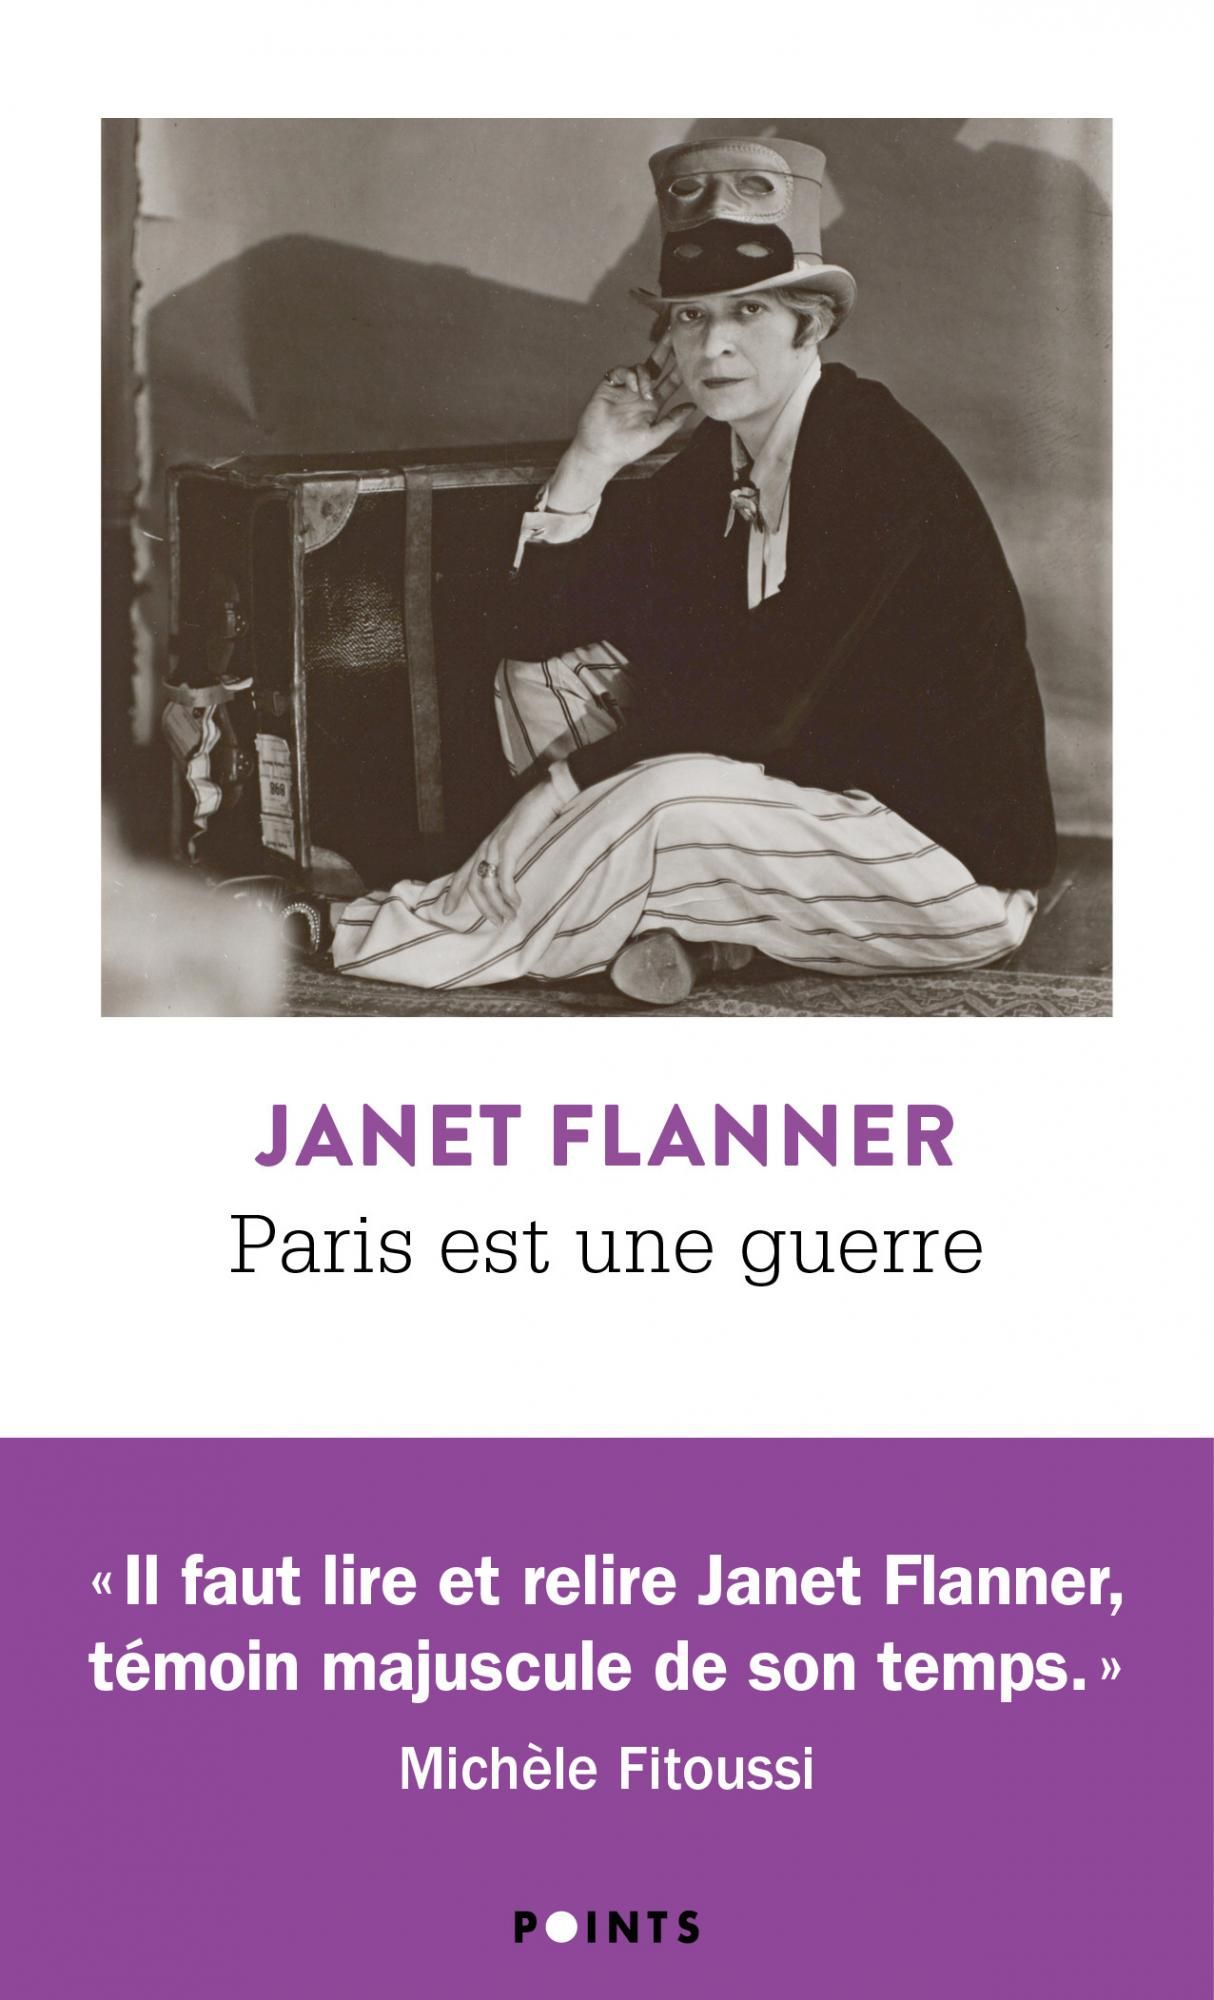 Janet Flanner, Paris est une guerre